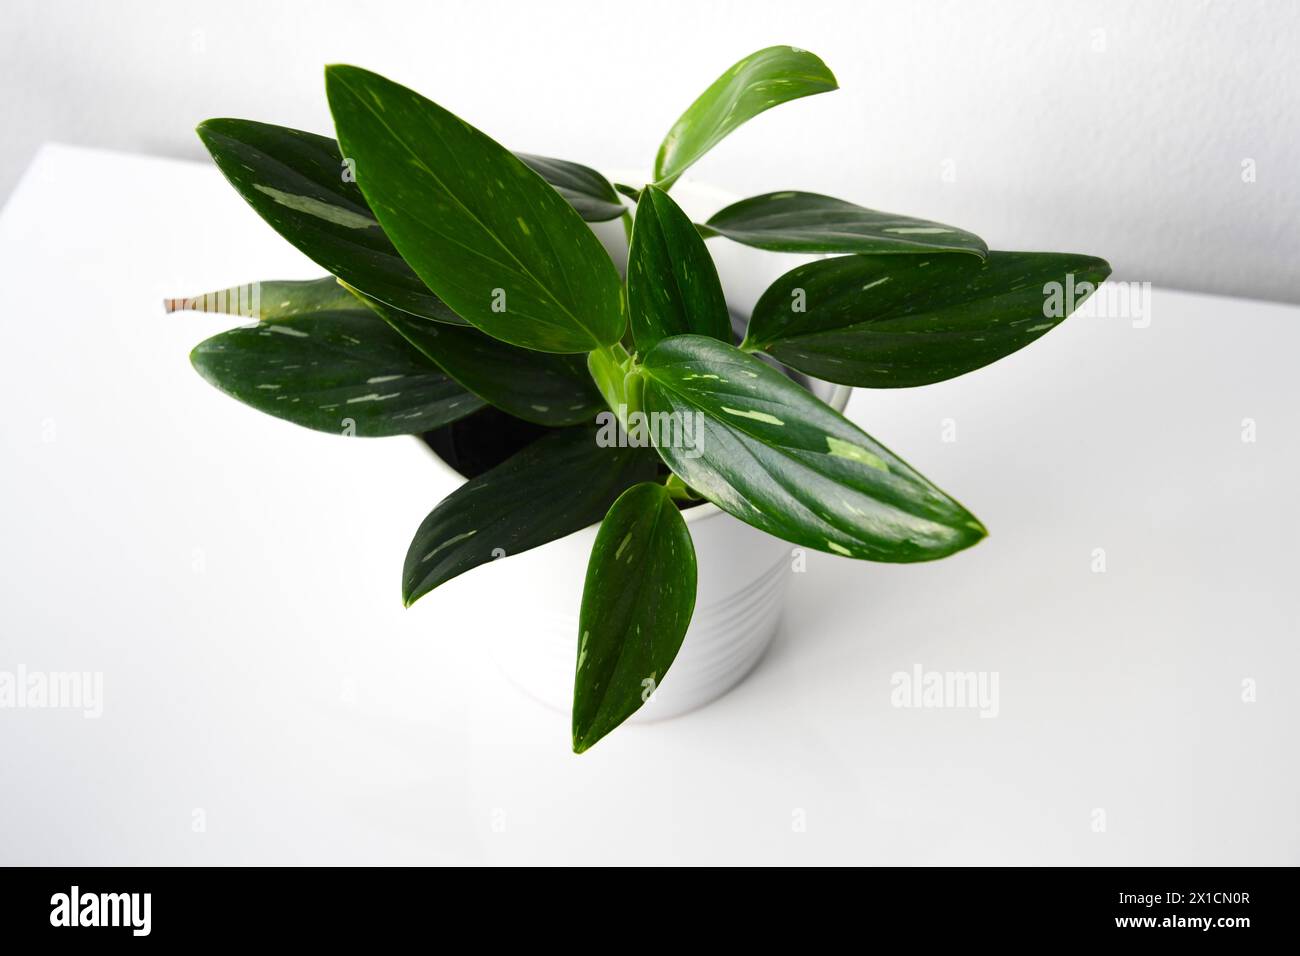 Filodendro di Vining, pianta con foglie verdi e variegazione bianca in una pentola bianca. Isolato su sfondo bianco. Orientamento orizzontale, dall'alto. Foto Stock